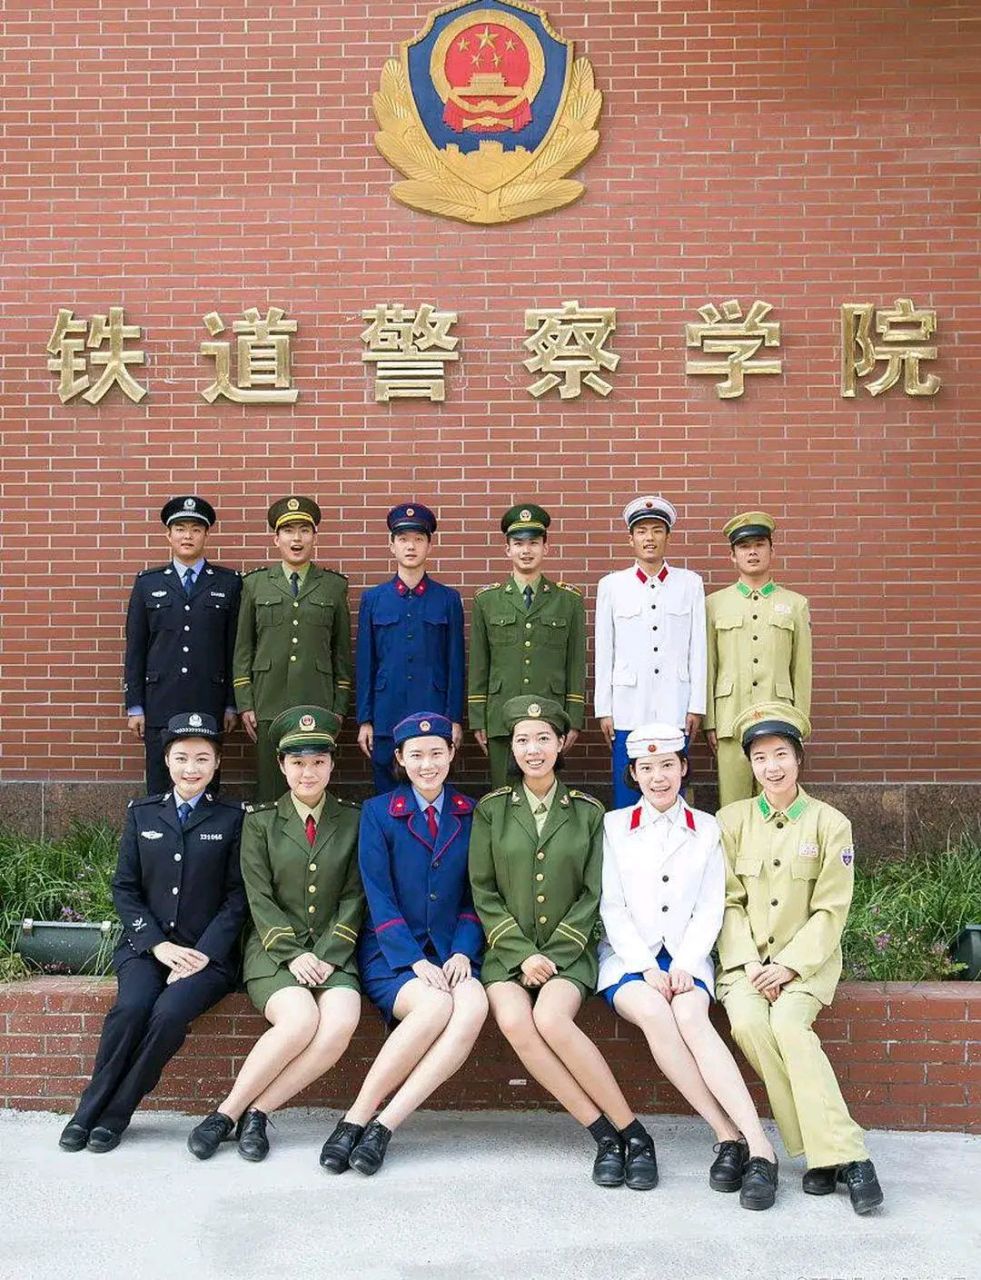 当铁道警察,最对口的学校就是河南郑州的铁道警察学院!  他是公安部直